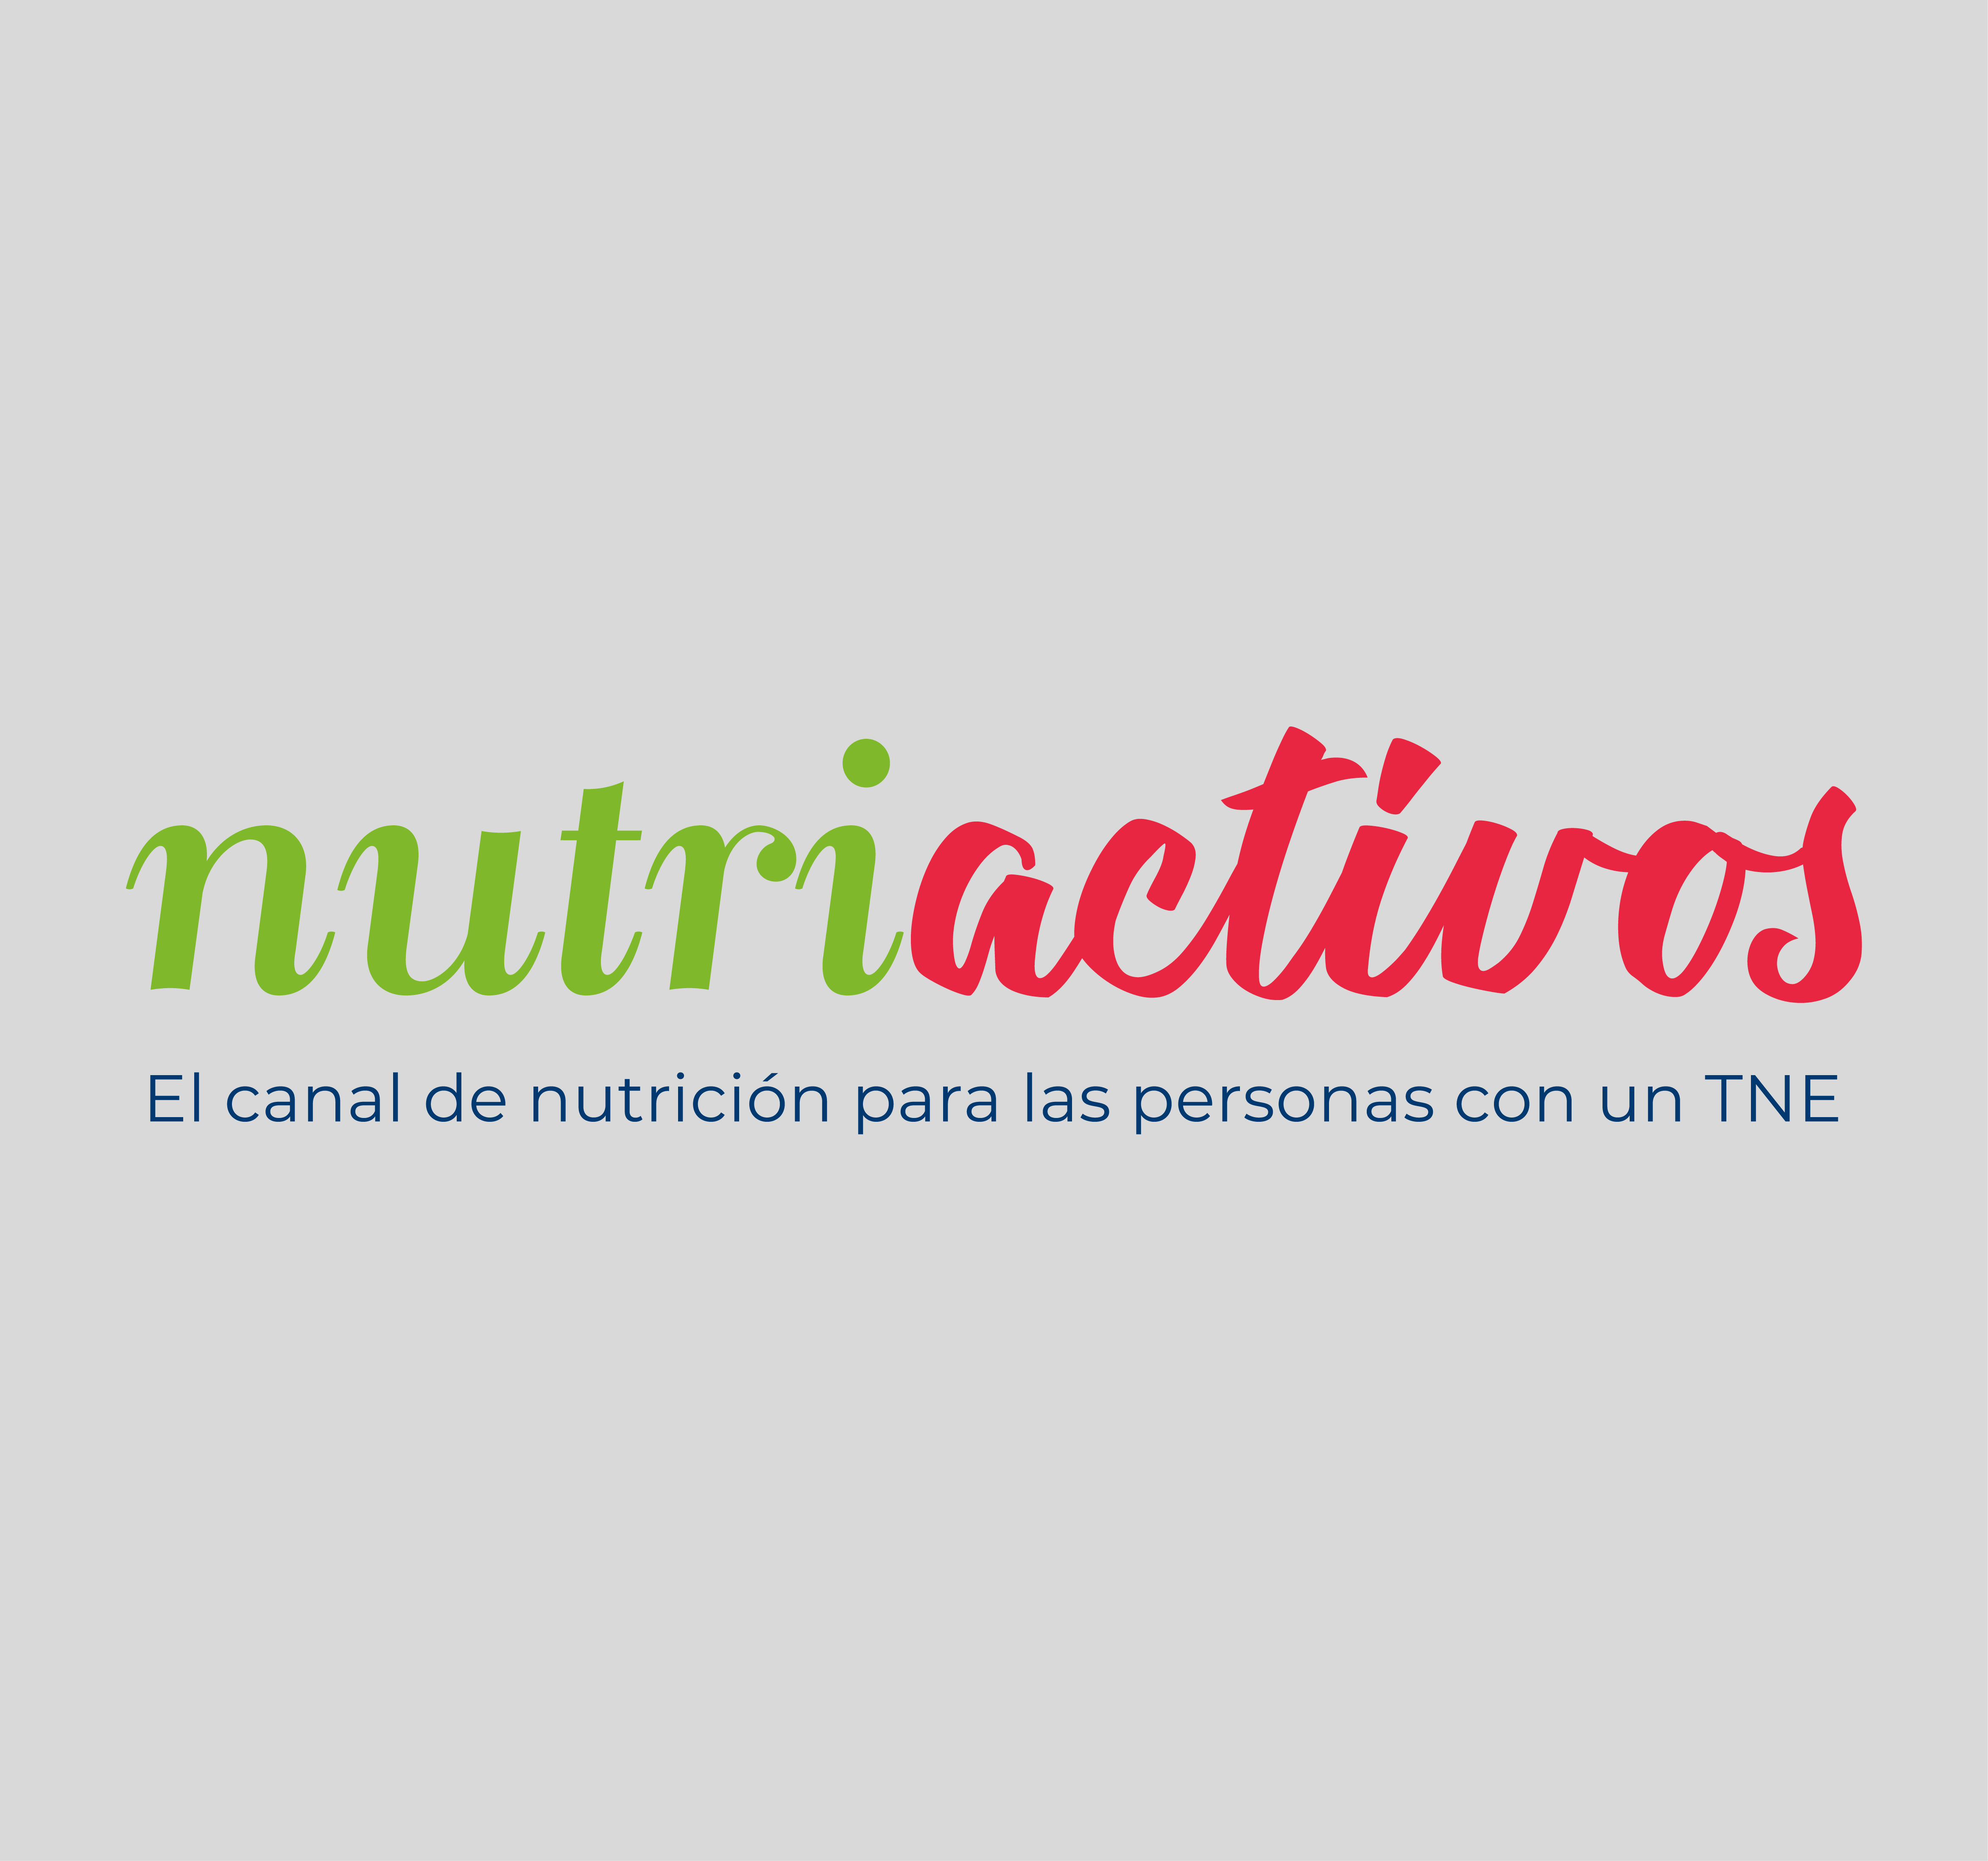 (c) Nutriactivos-net.com